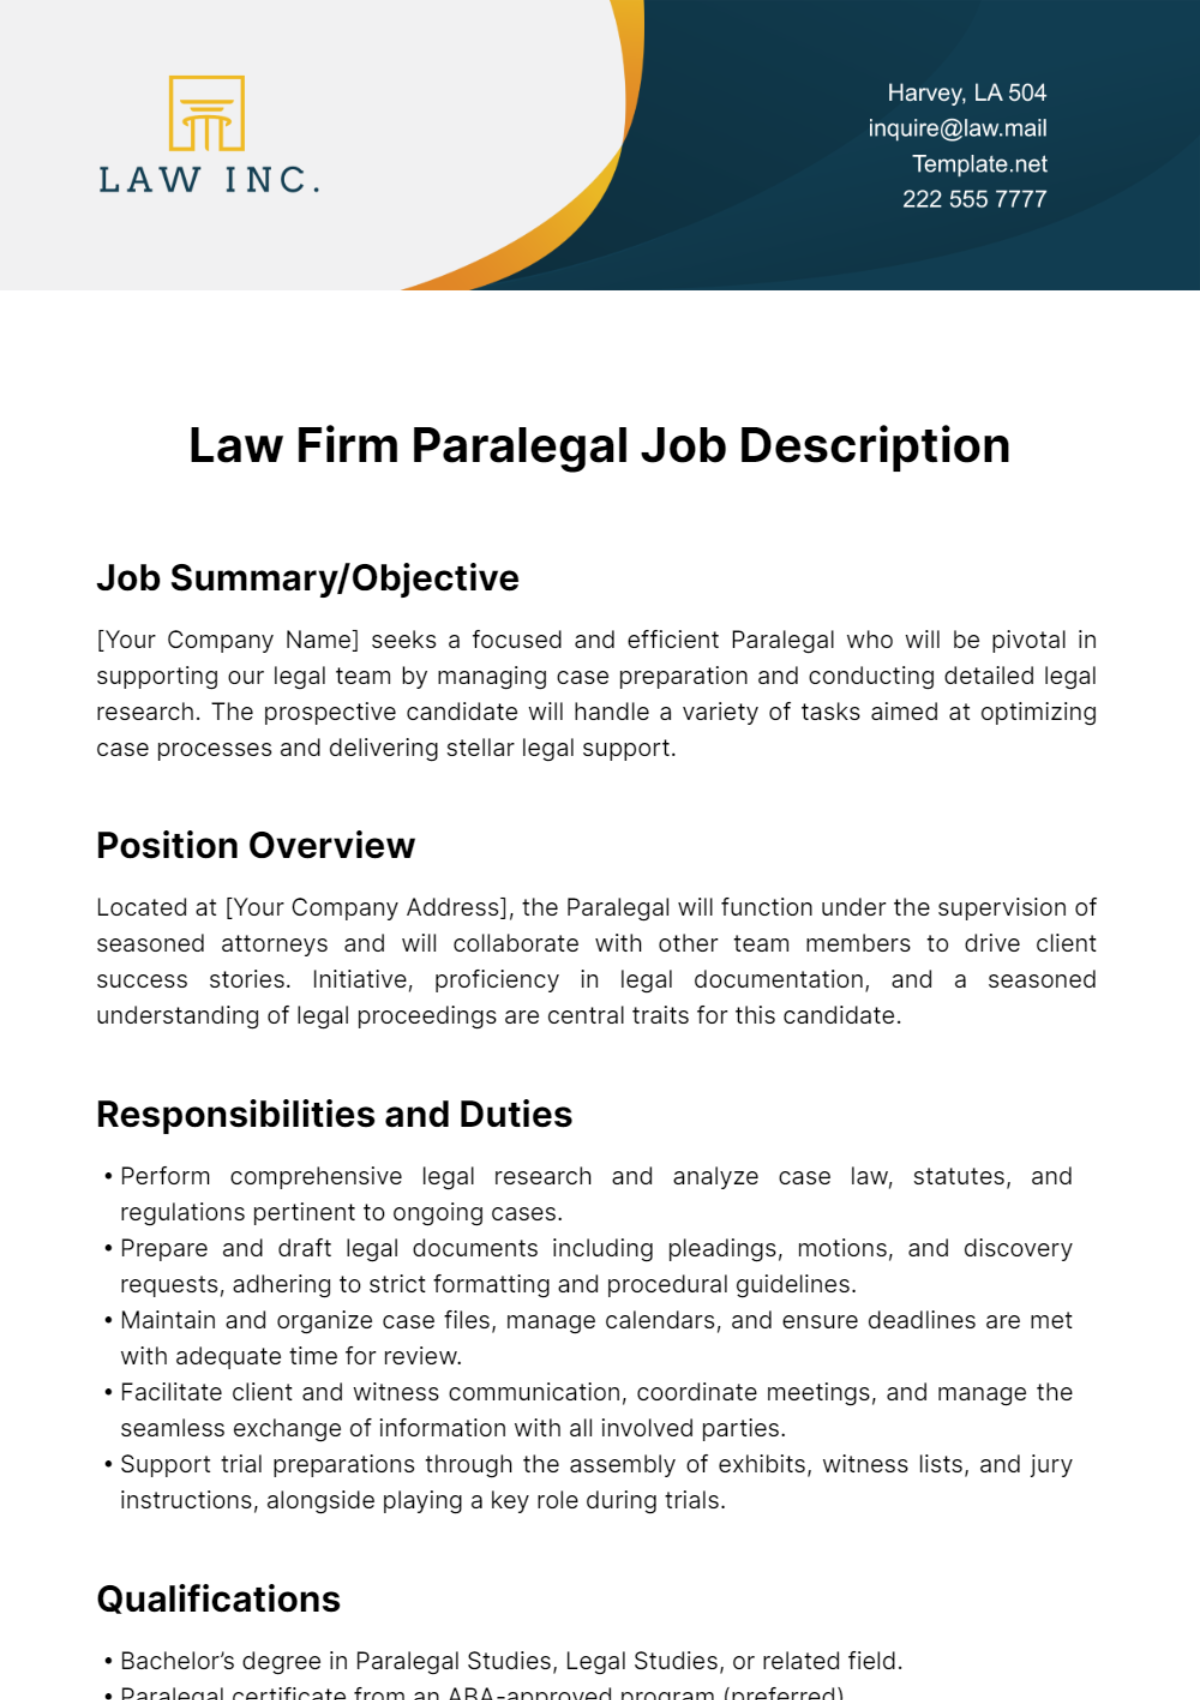 Law Firm Paralegal Job Description Template